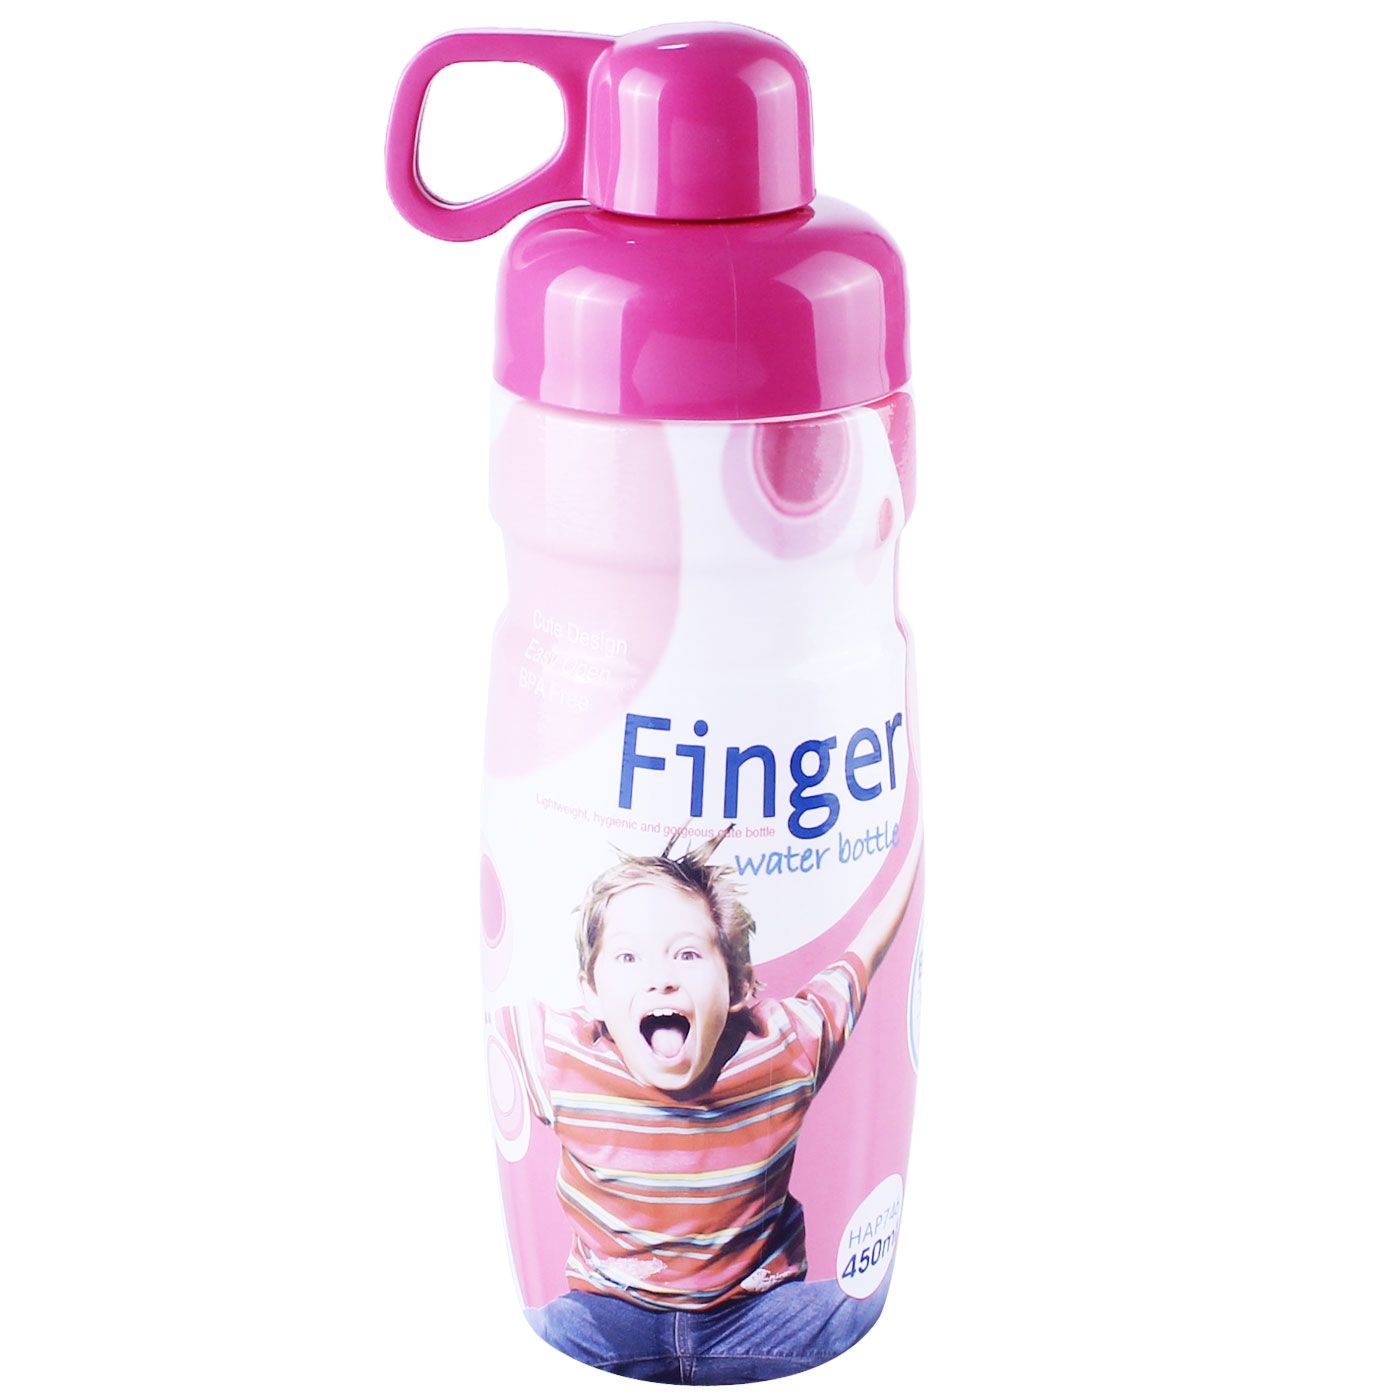 Lock & Lock Finger Water Bottle 450ml Pink - 1